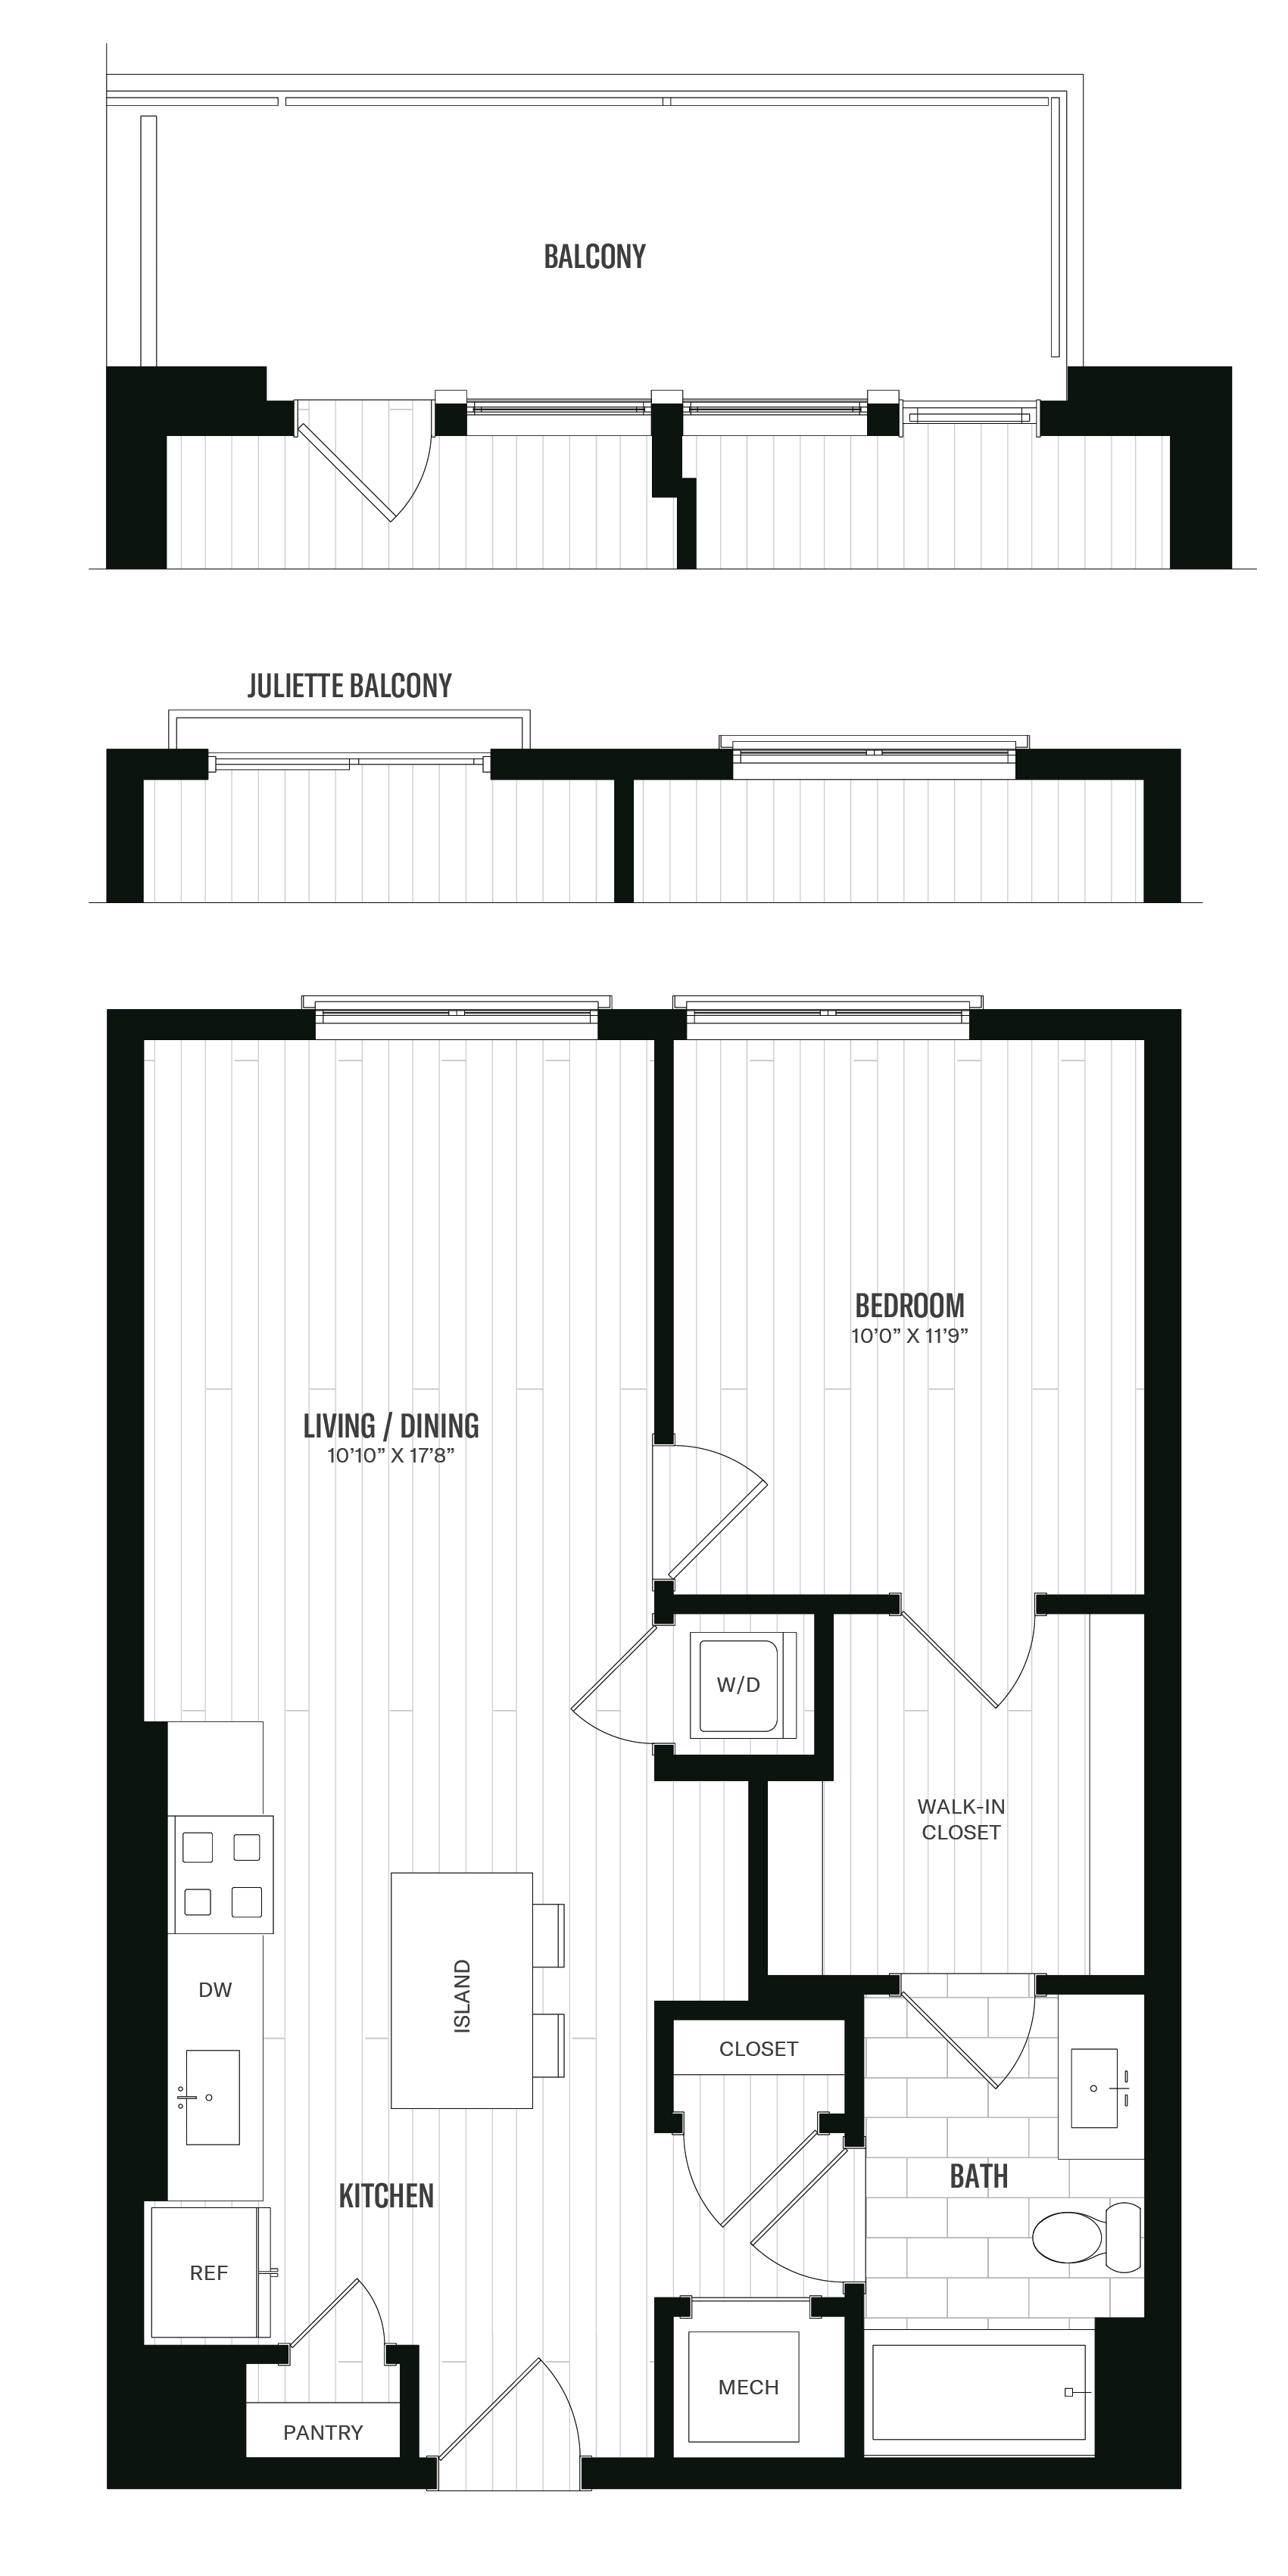 Floorplan image of unit 461